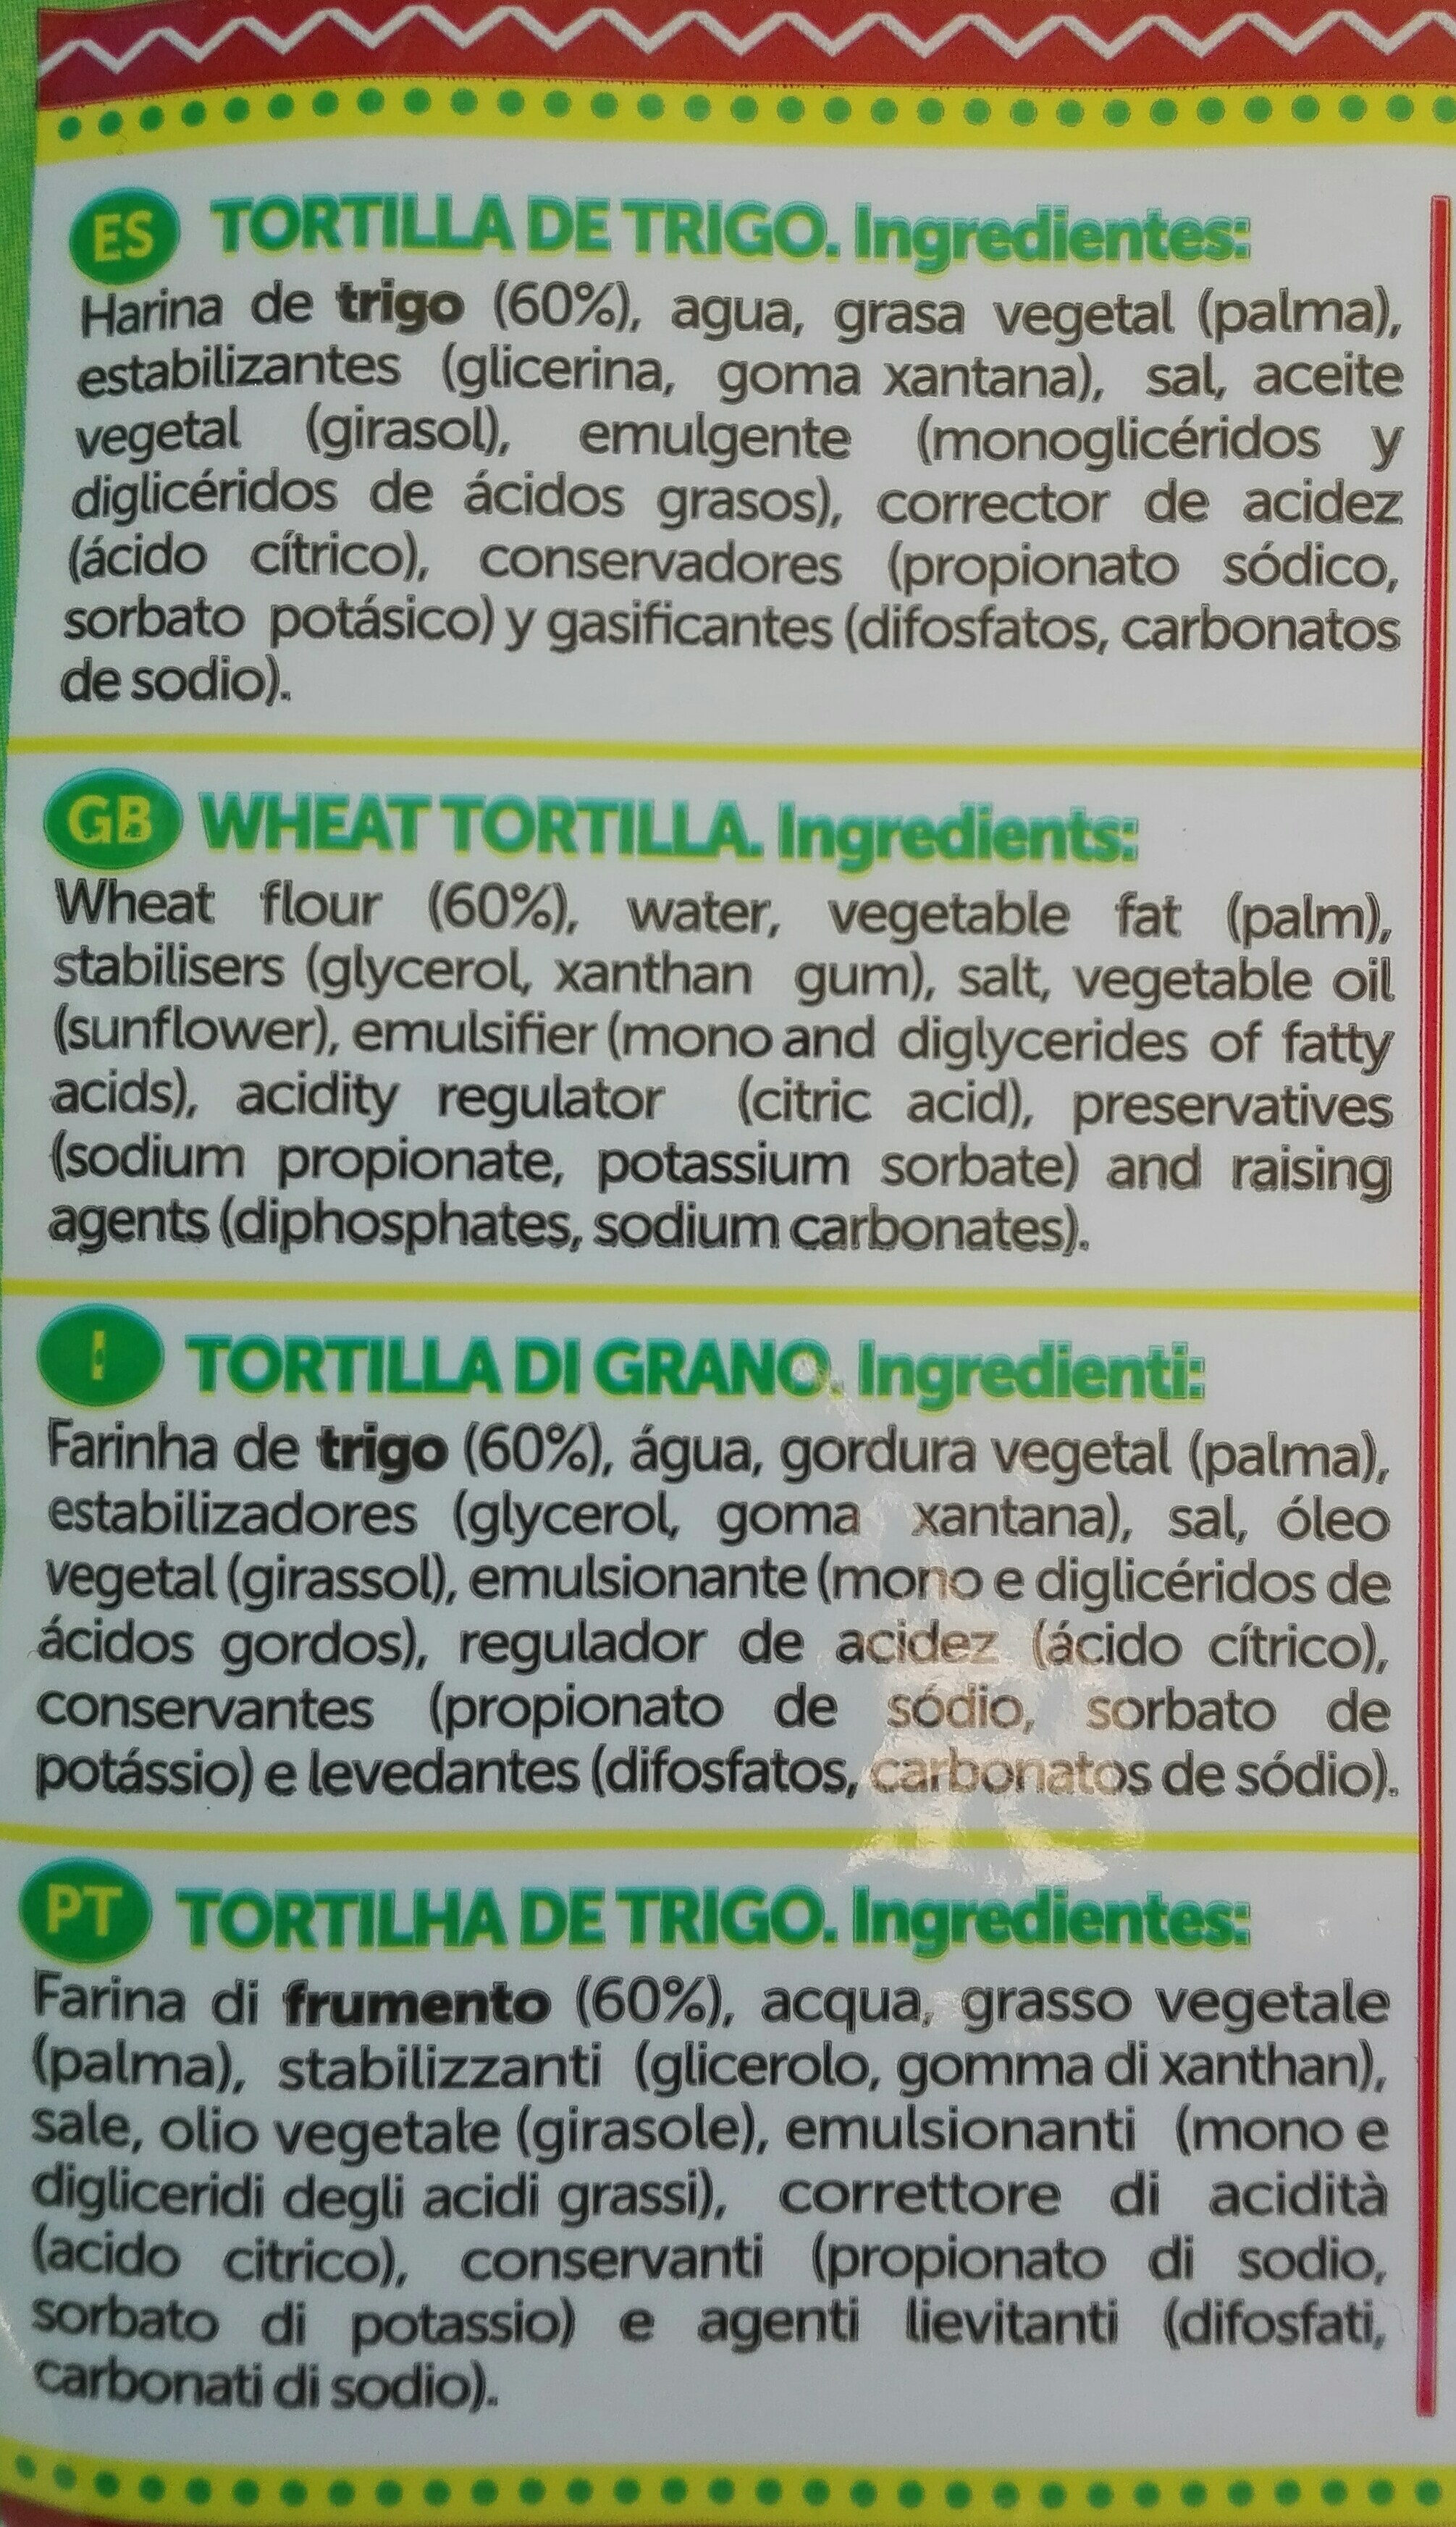 Tortillas de trigo para fajitas - Ingredients